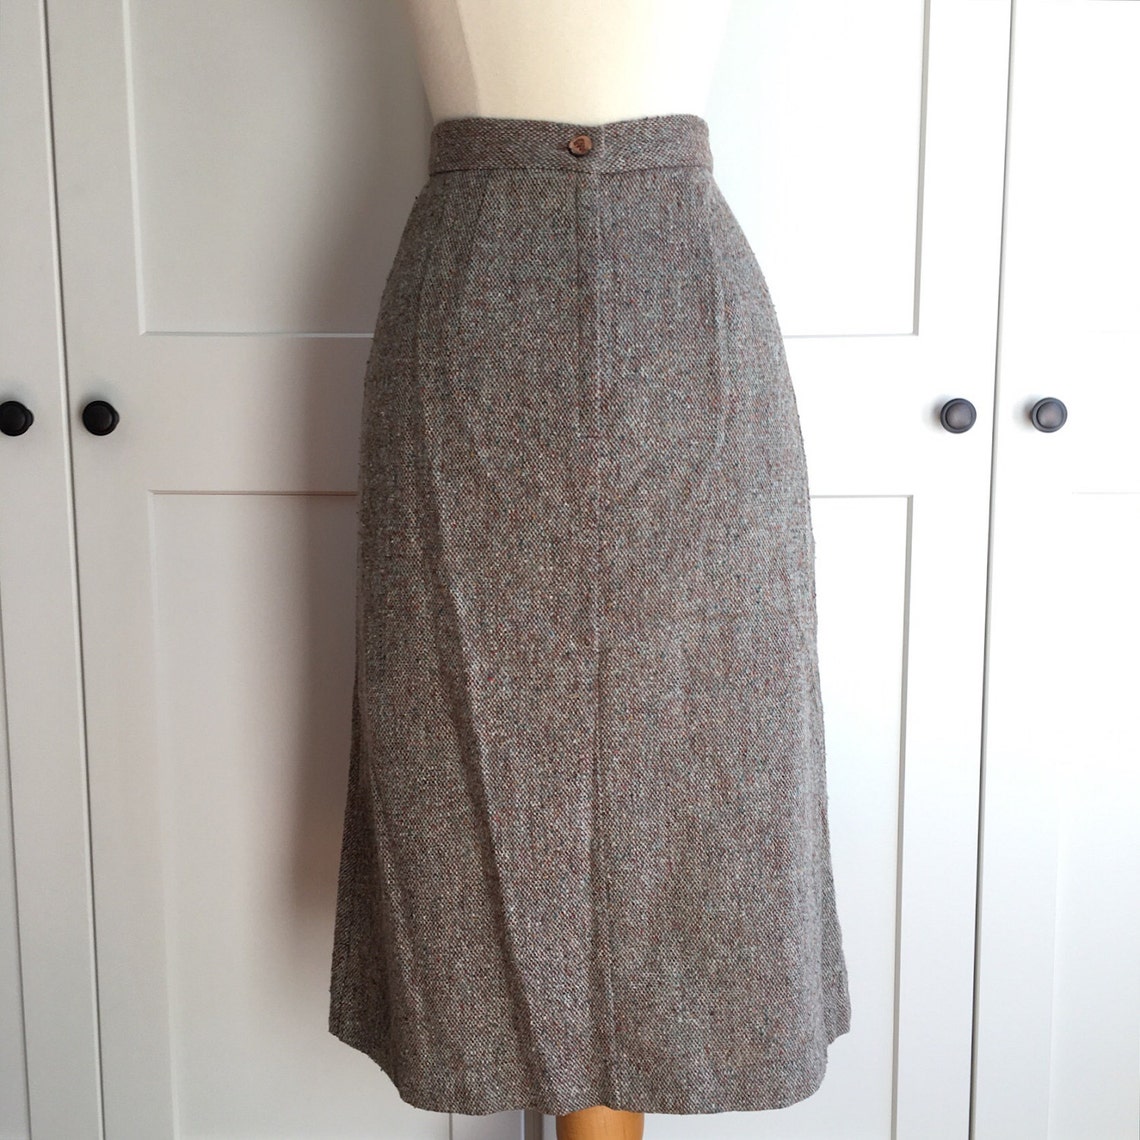 1970s Vintage Tweed Skirt Tweed Pencil Skirt by MJ Concepts | Etsy